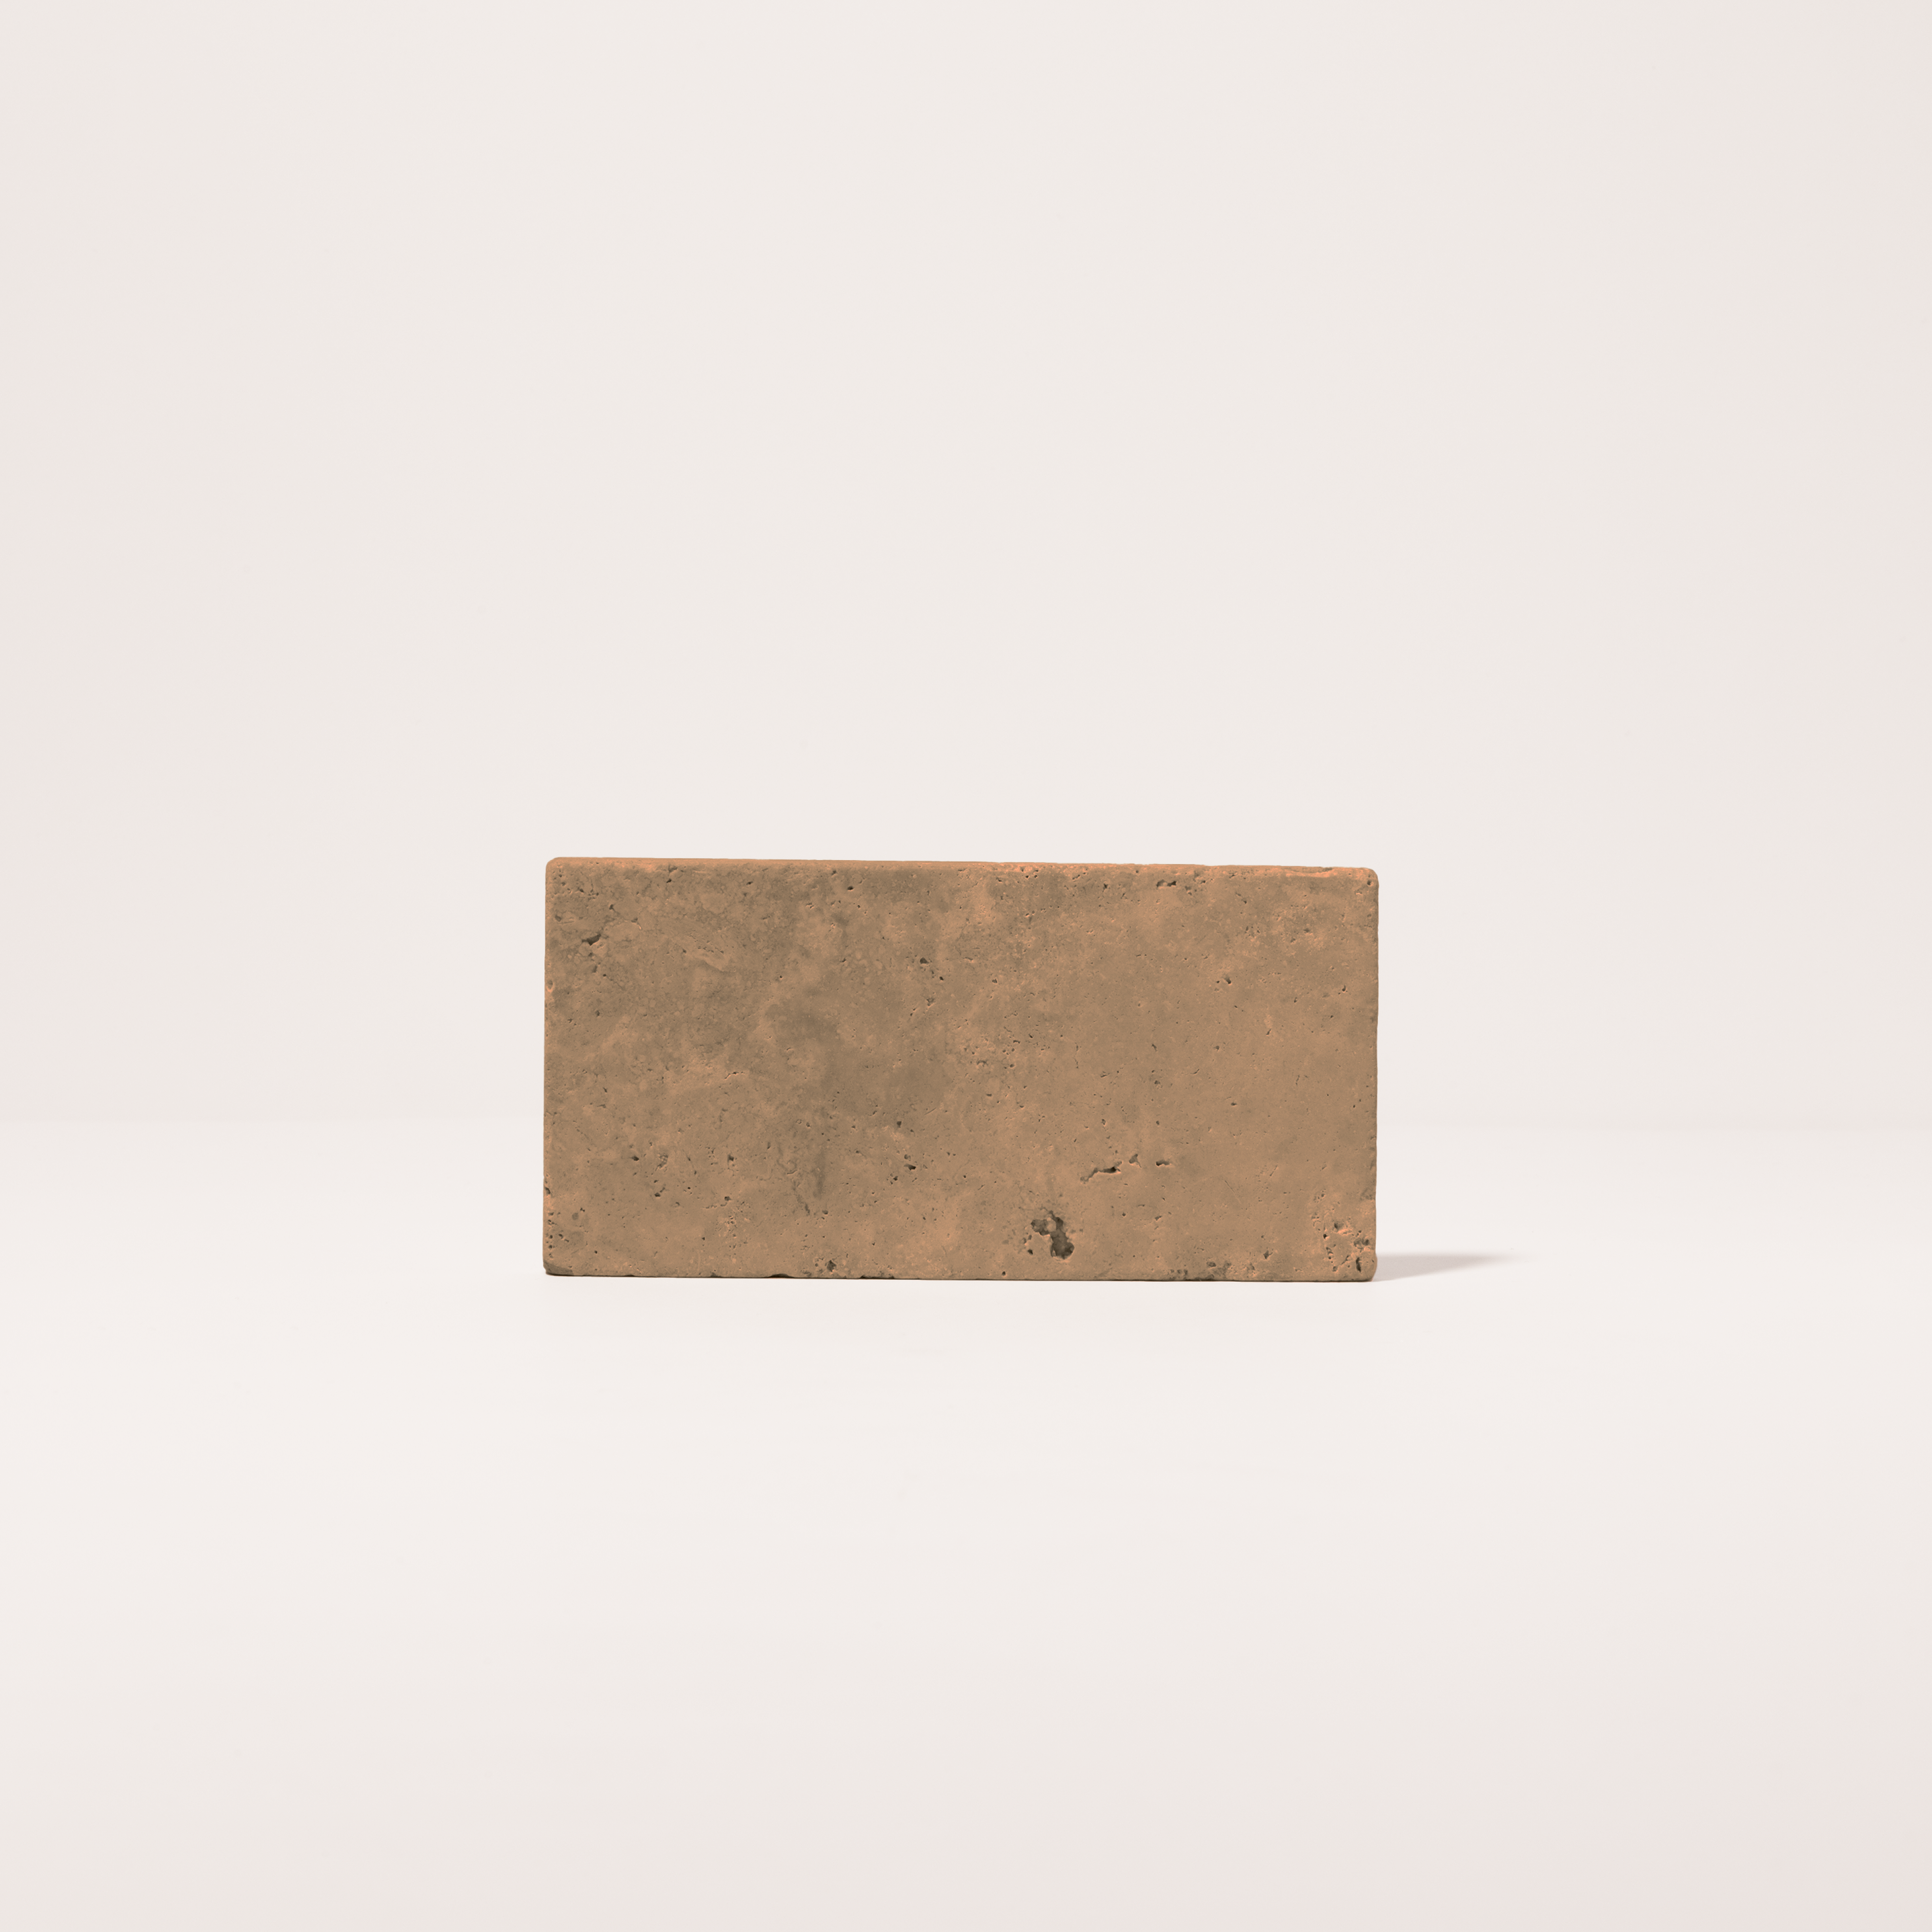 Base de piedra minimalista